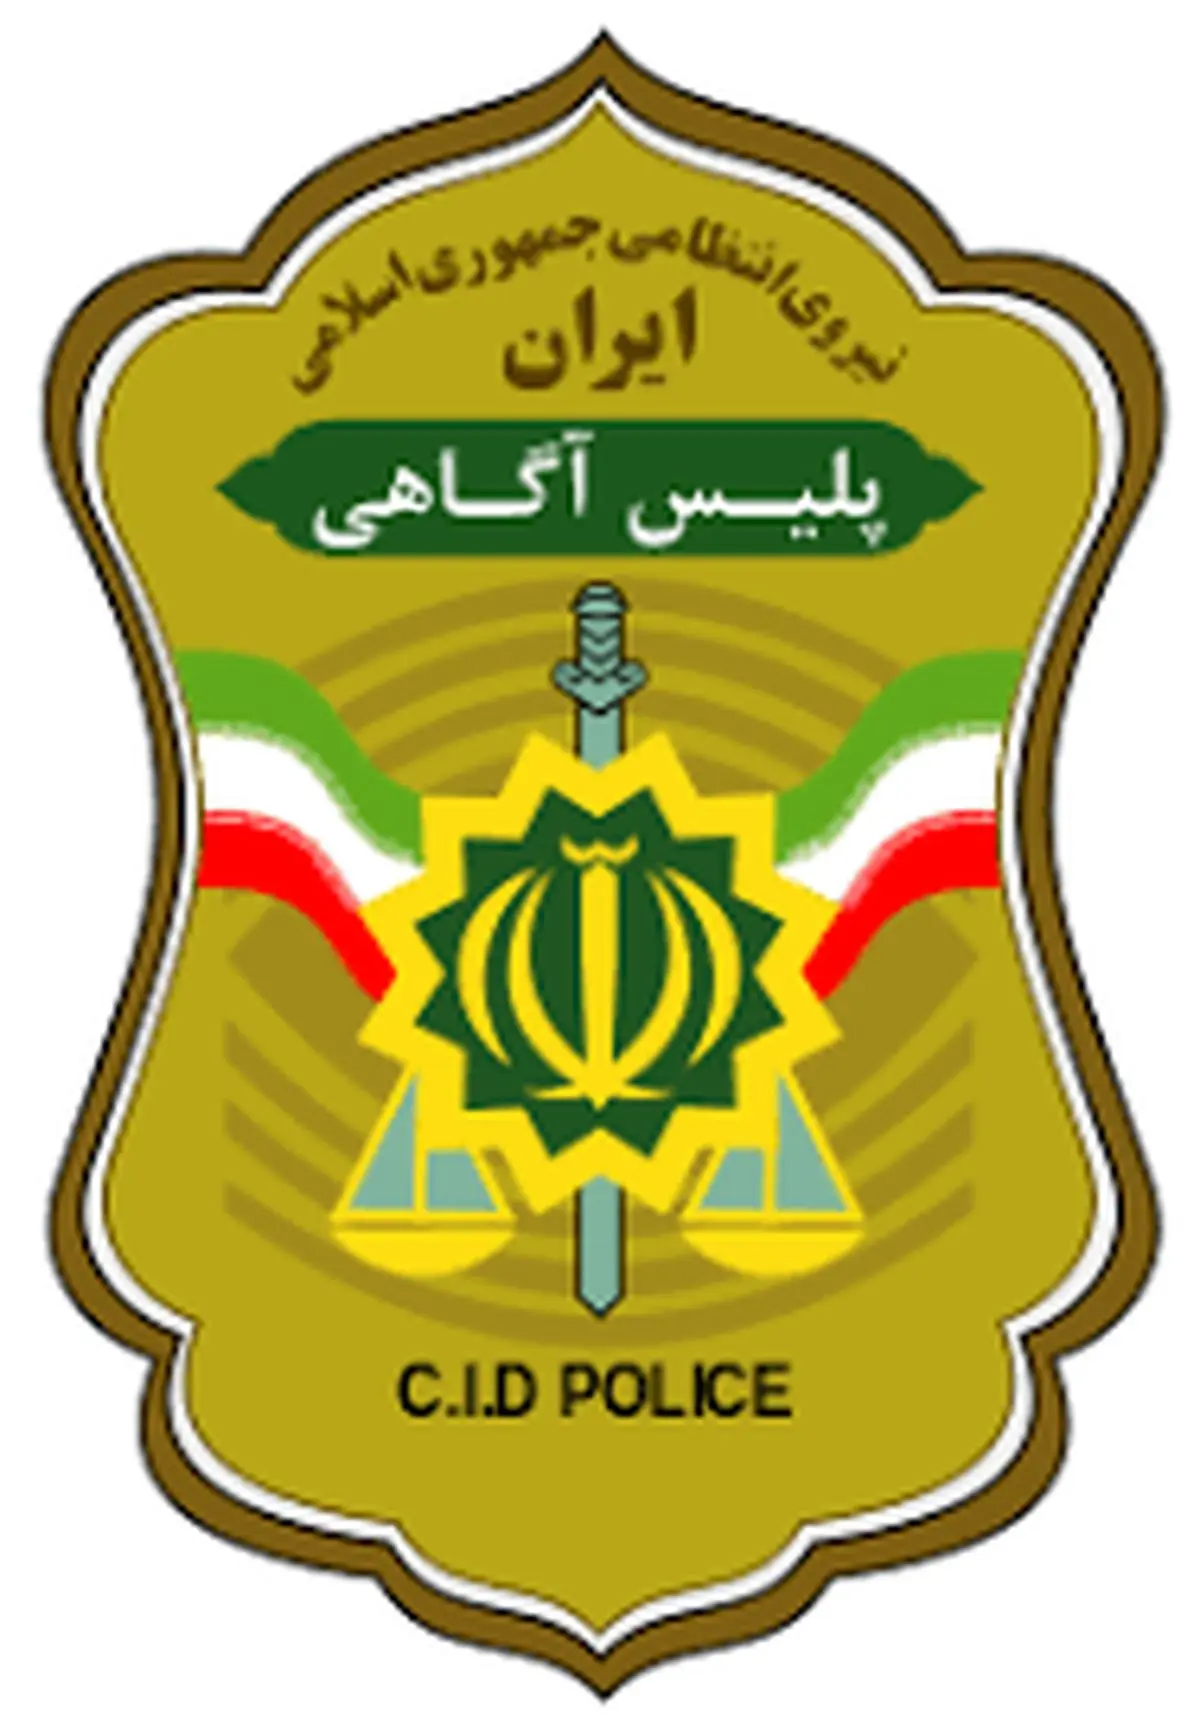 
فروپاشی باند سارقان مغازه در کرمانشاه